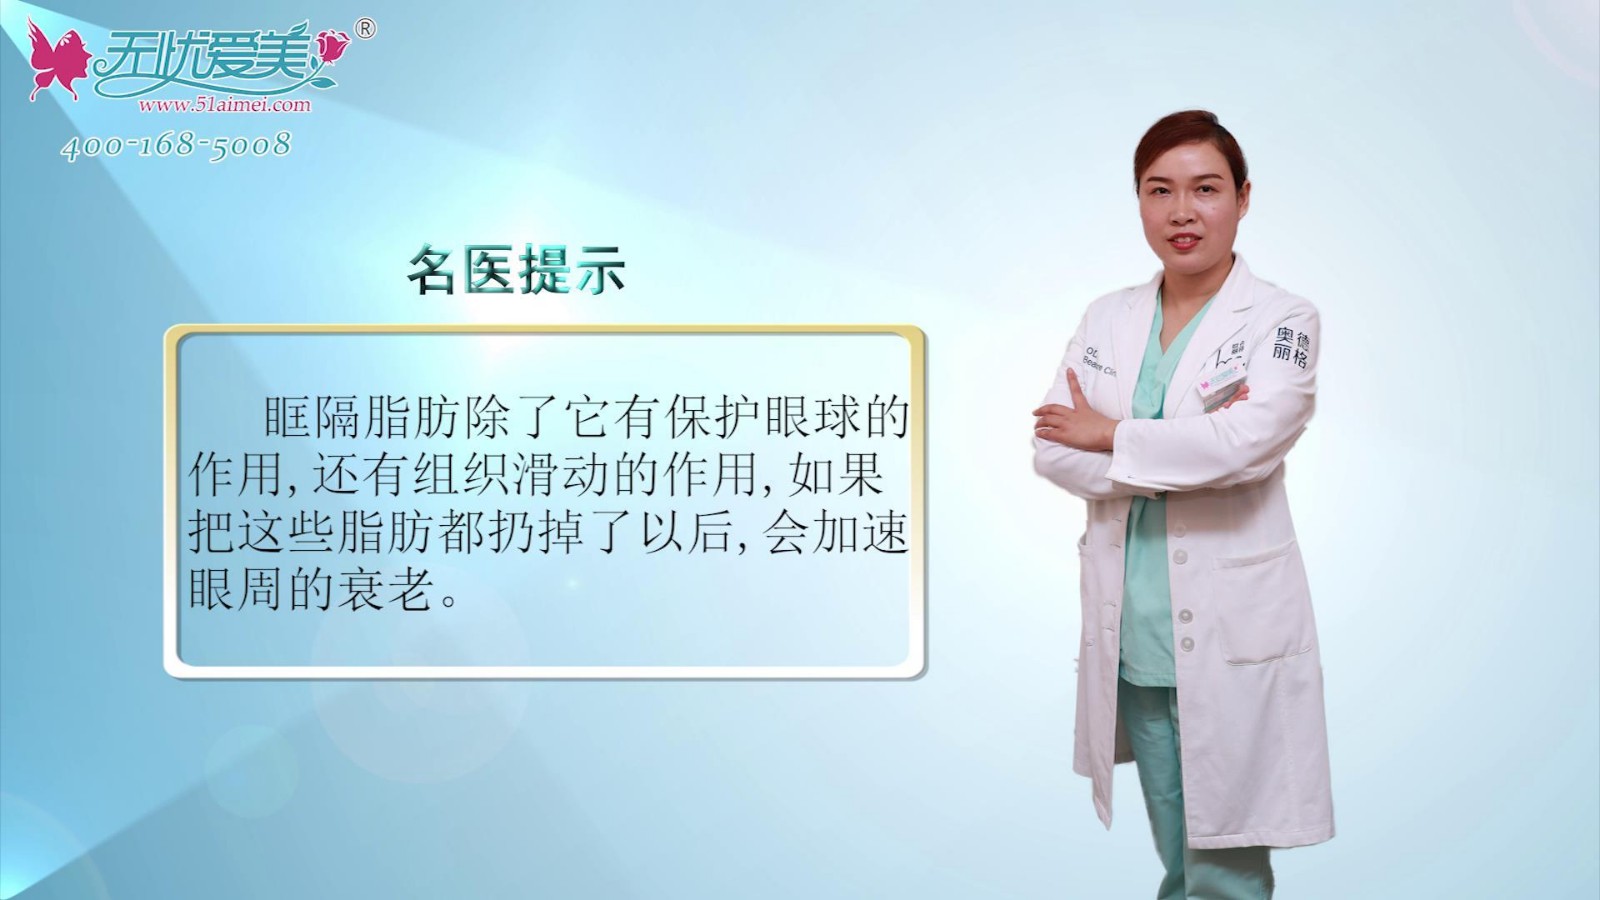 奥德丽格马晓艳视频解说祛眼袋手术中眶隔脂肪有什么作用